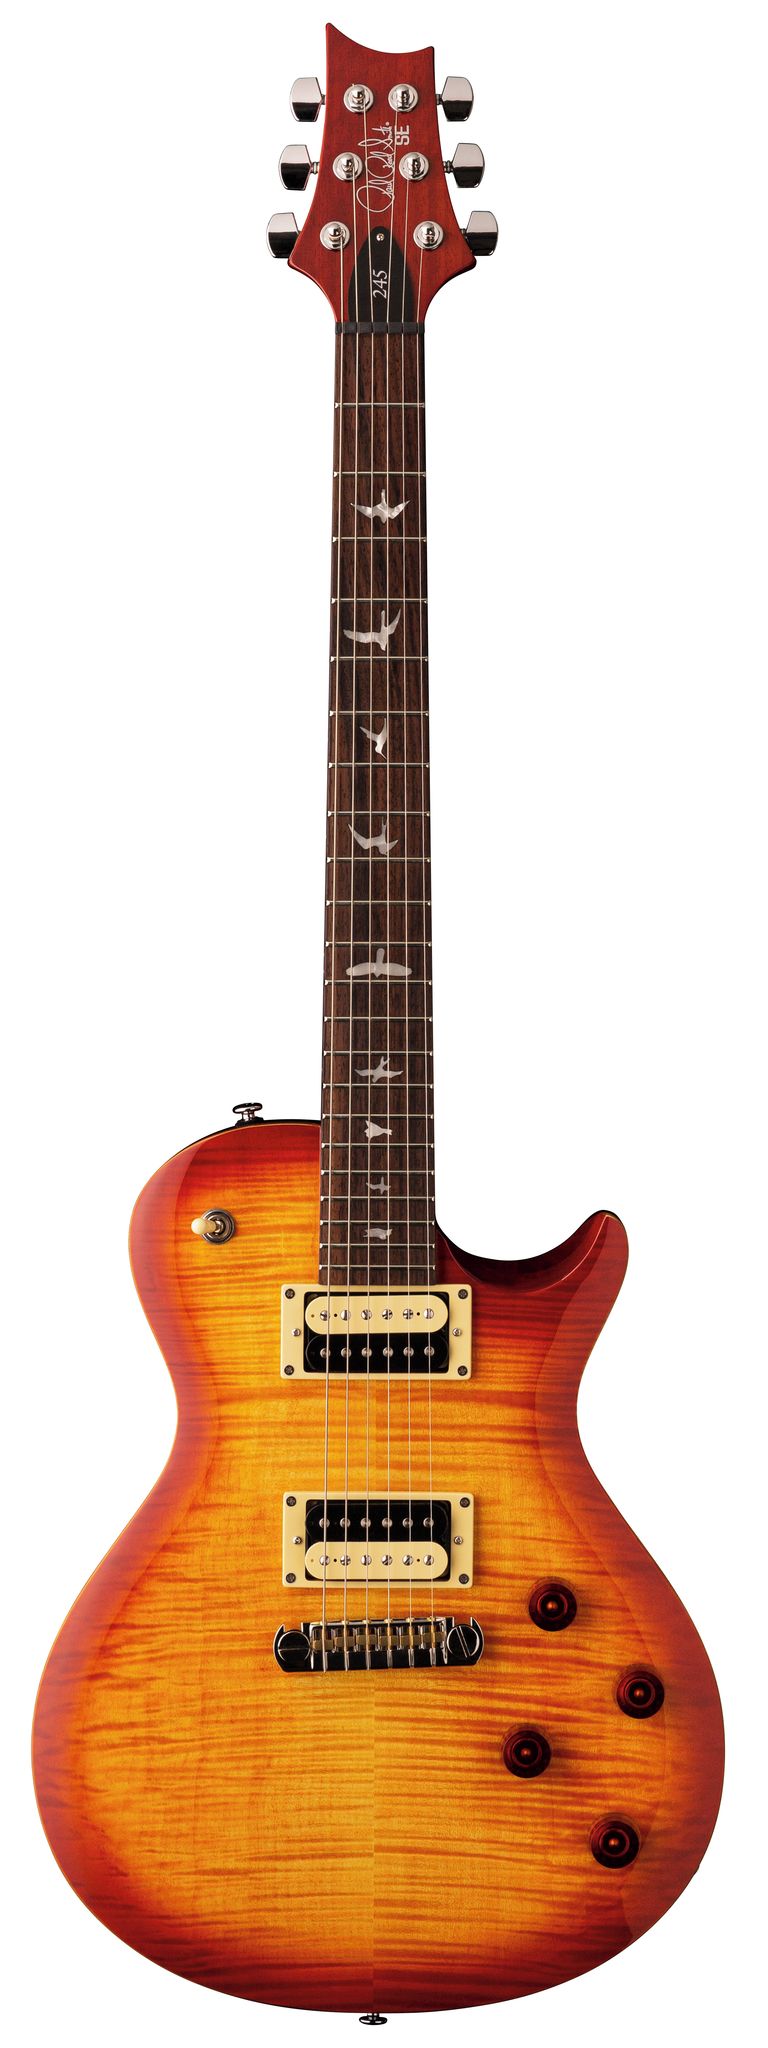 Køb PRS SE 245 Vintage Sunburst - El-guitar inkl. gigbag - Pris 6195.00 kr.